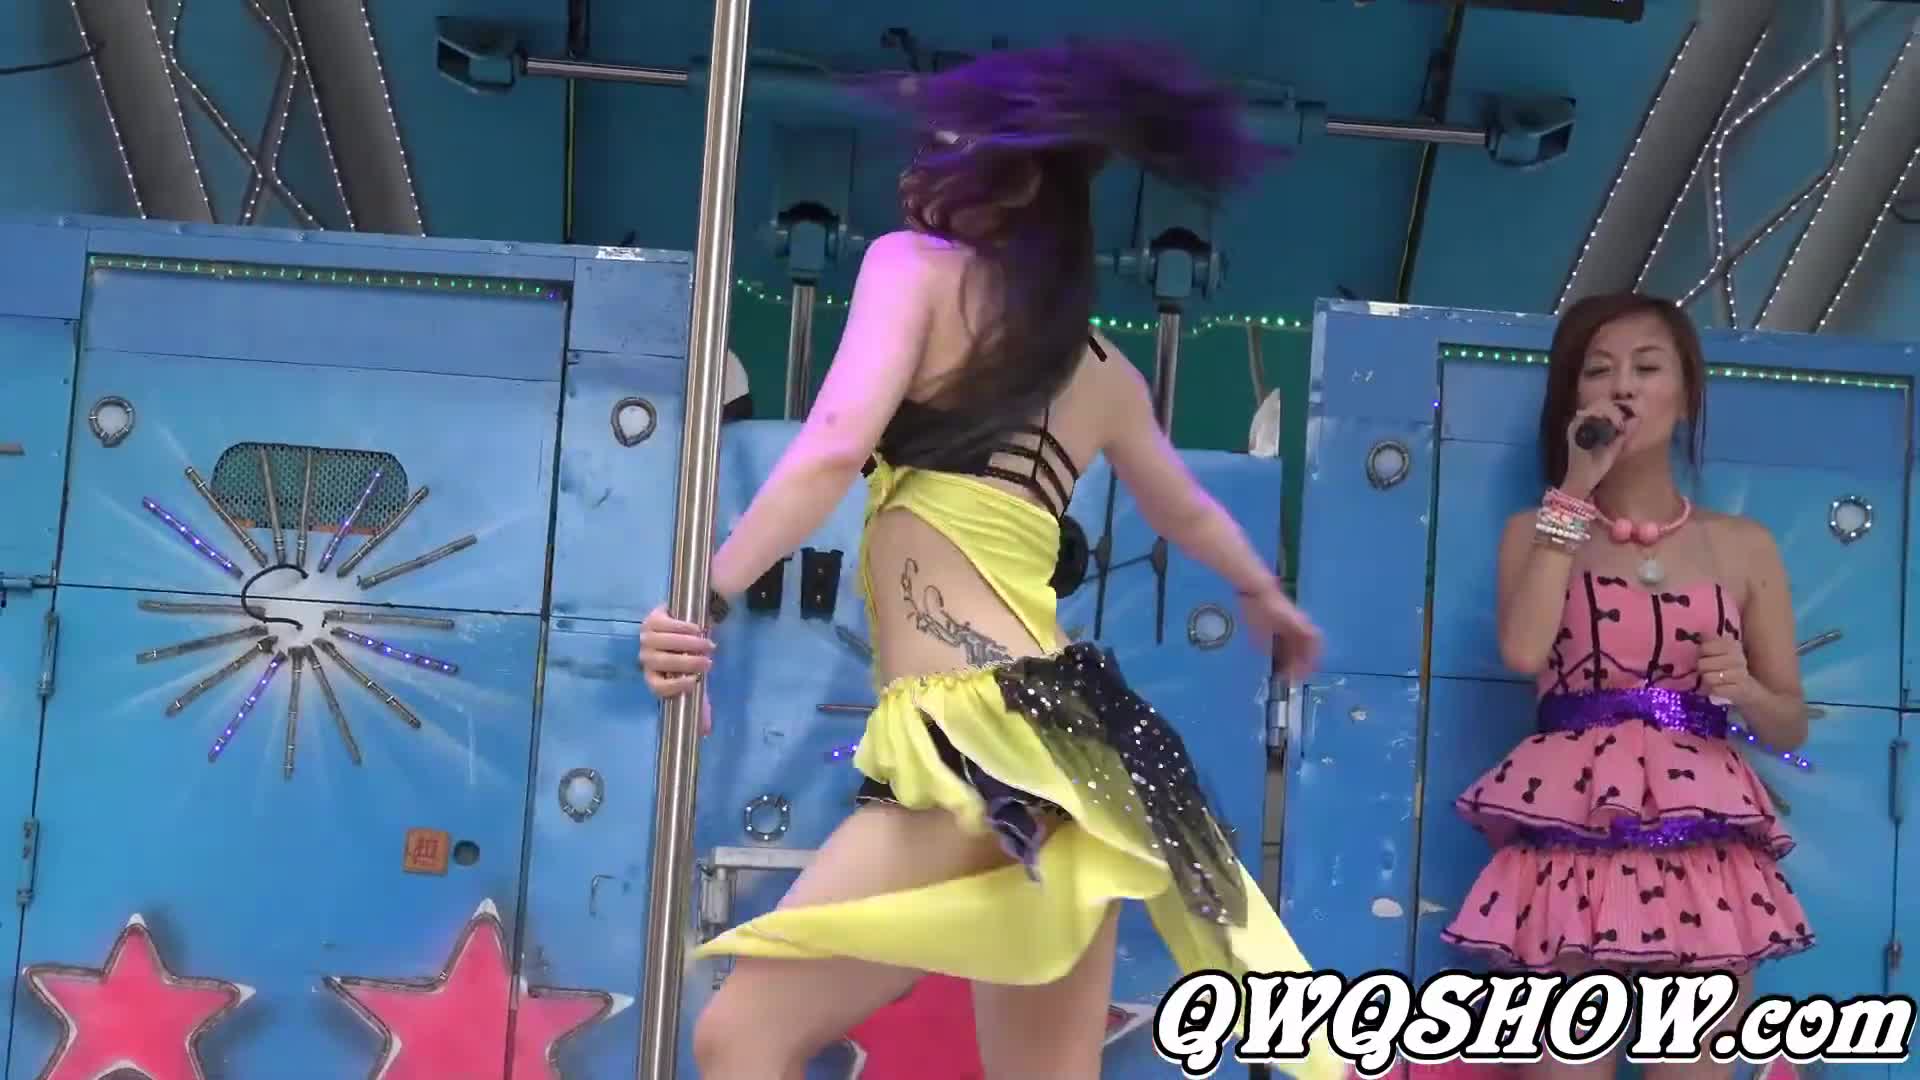 中元普渡辣妹鋼管秀(265) & Pole dance show & セクシーダンス & เต้นเซ็กซี่ & 섹시댄스